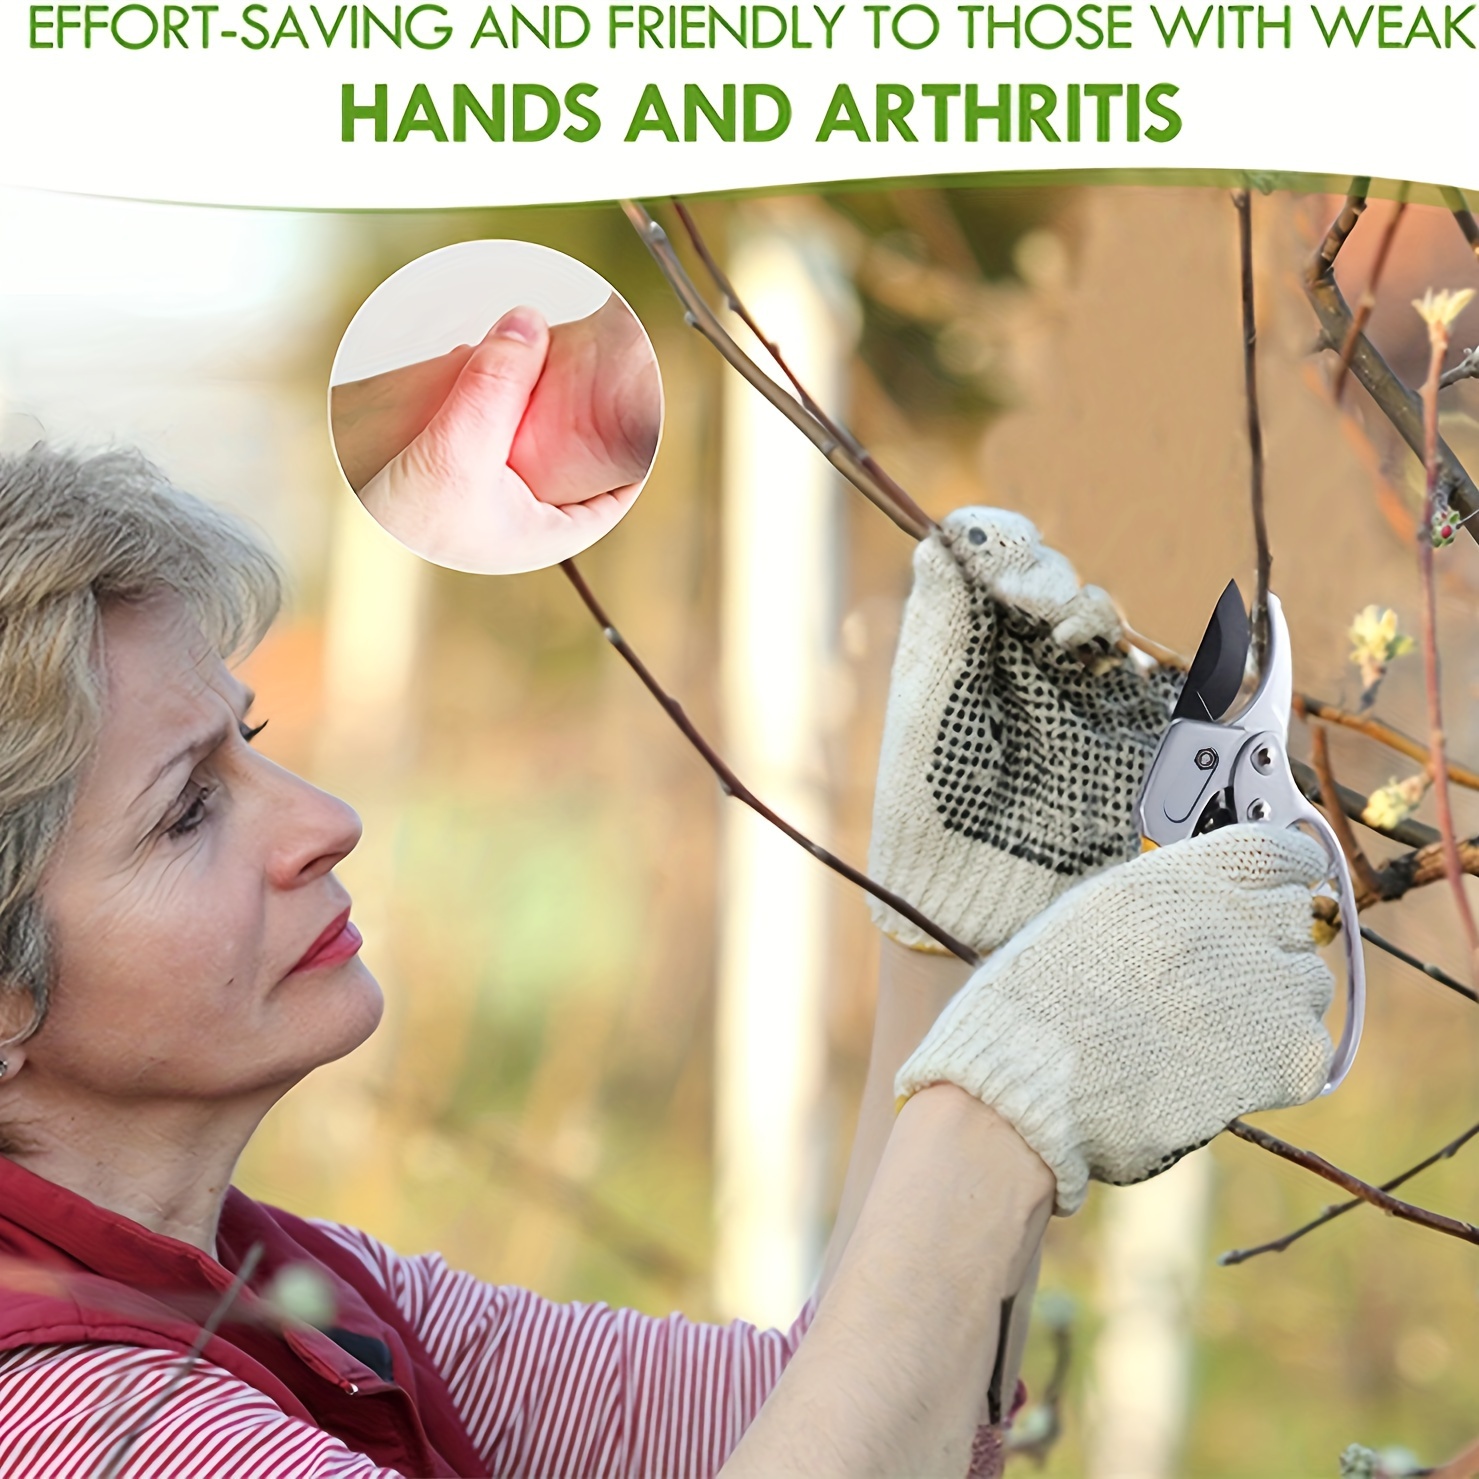 Garden Clippers: German Pruners For Trimming Roses, Trees & Live Plants -  Sharp Garden Scissors For Arthritis Weak Hands